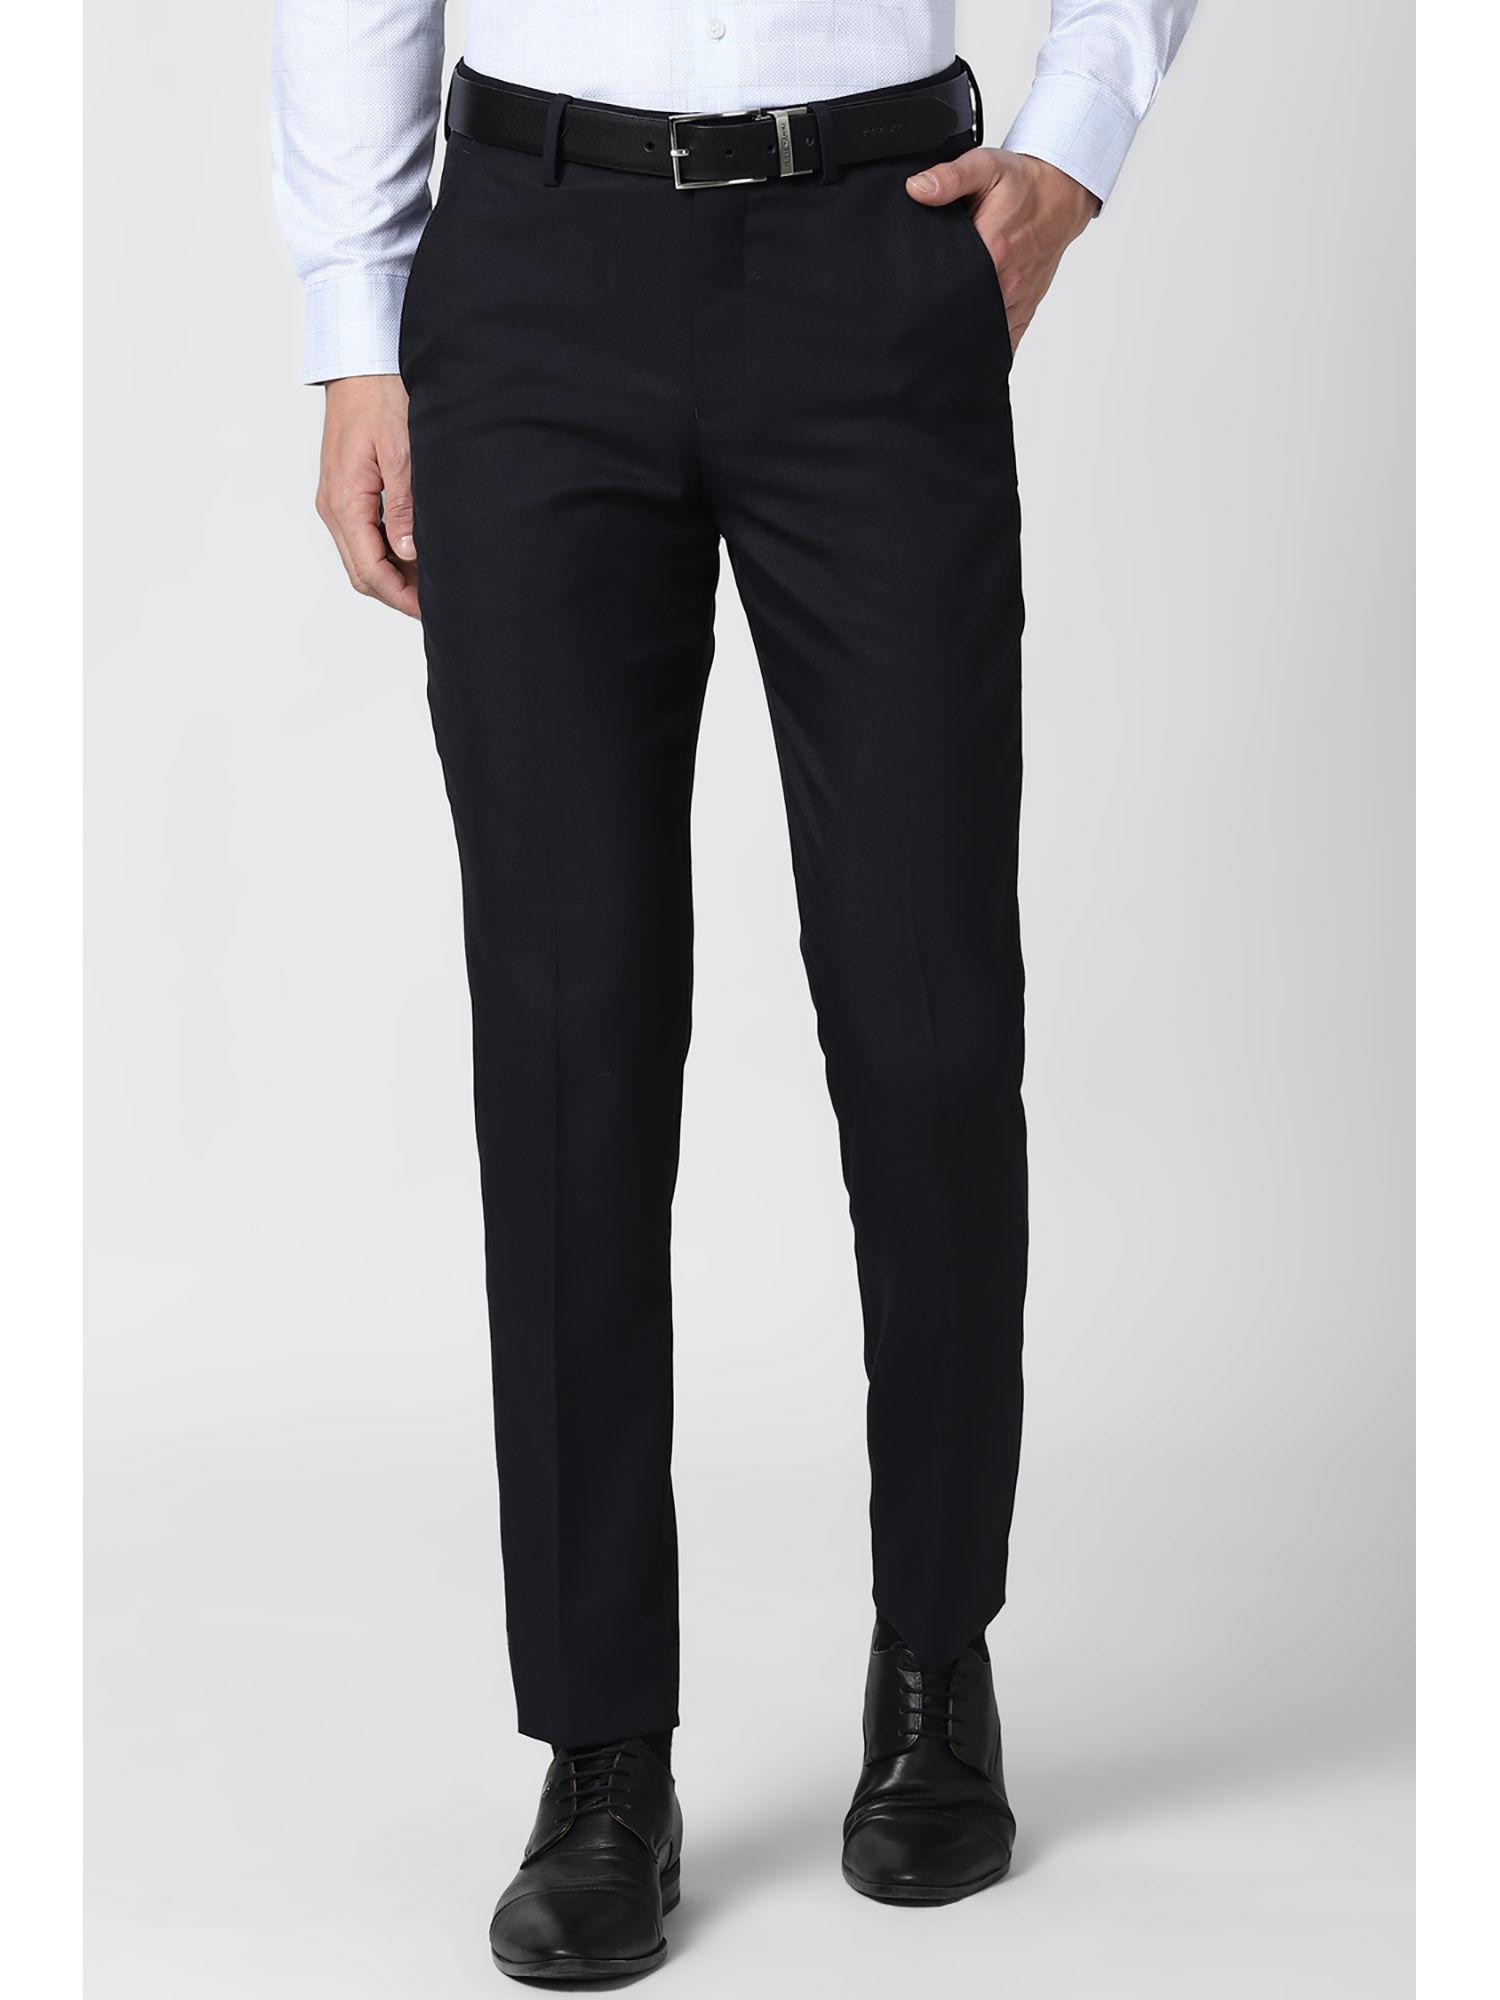 men black formal trouser